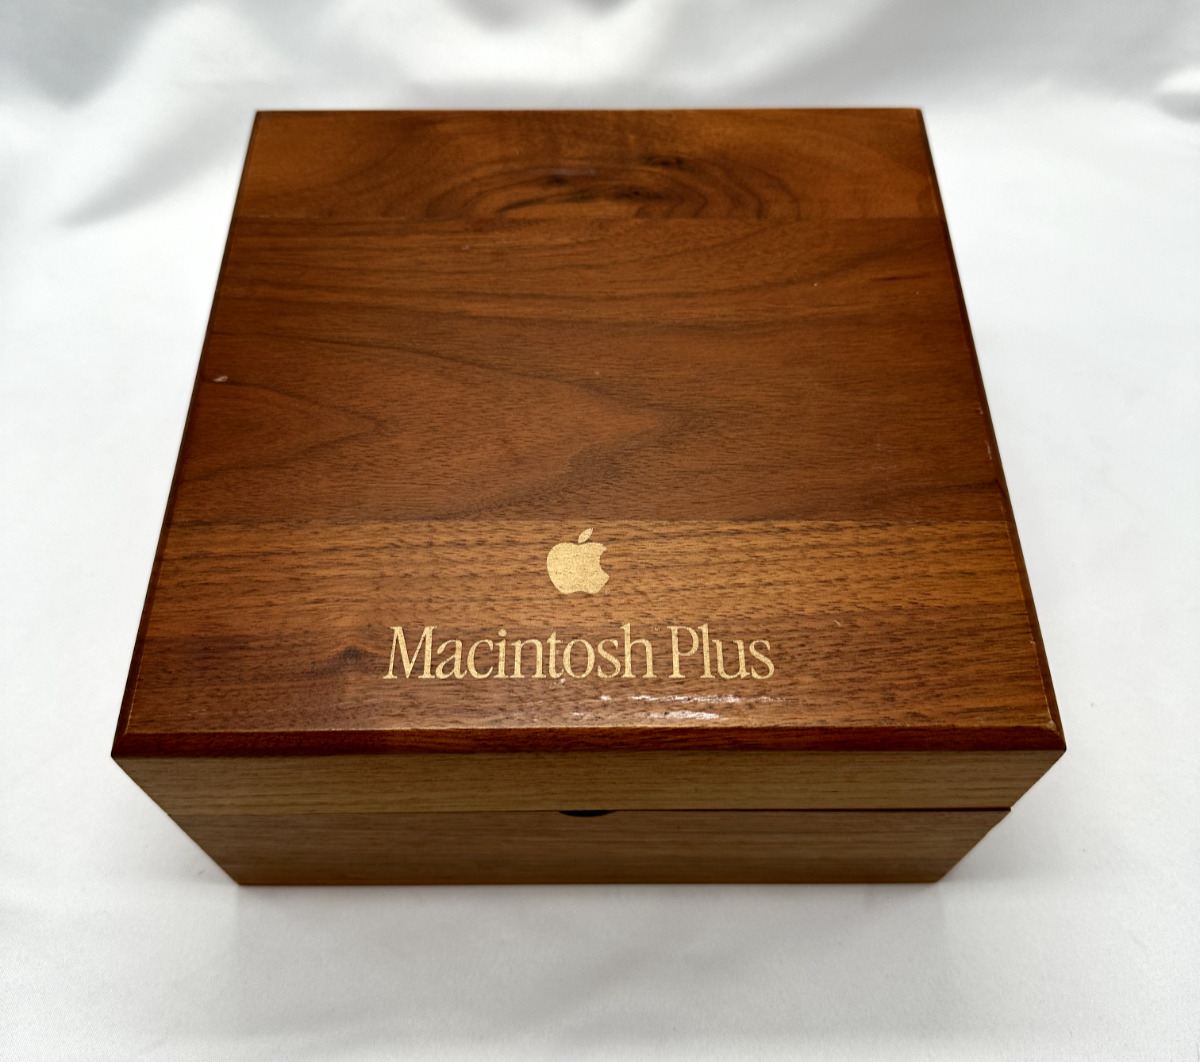 VINTAGE 1980s Apple Macintosh Plus Wooden Floppy Disk Box - Storage Case